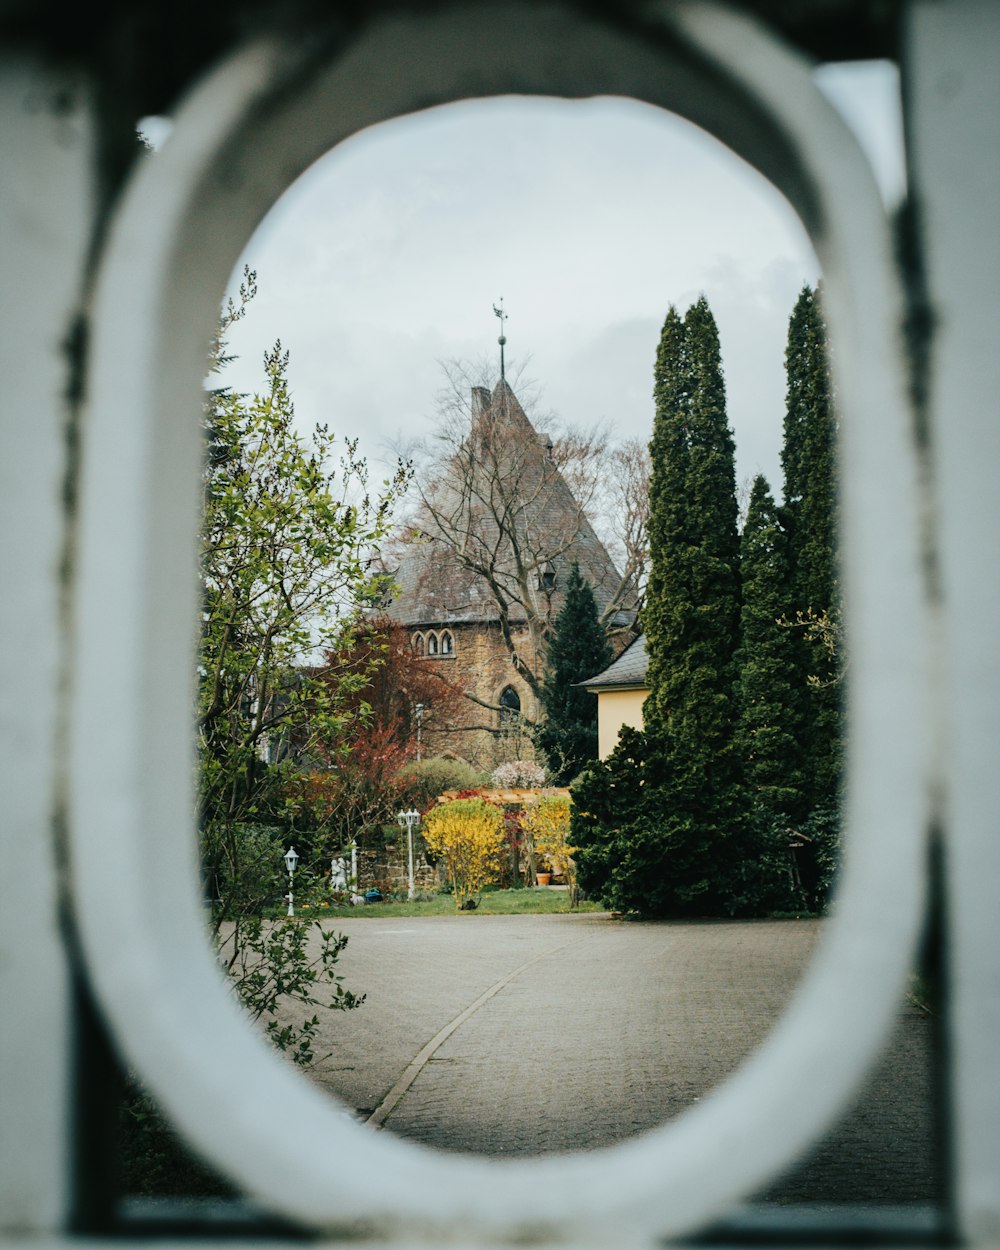 a view of a church through a circular window